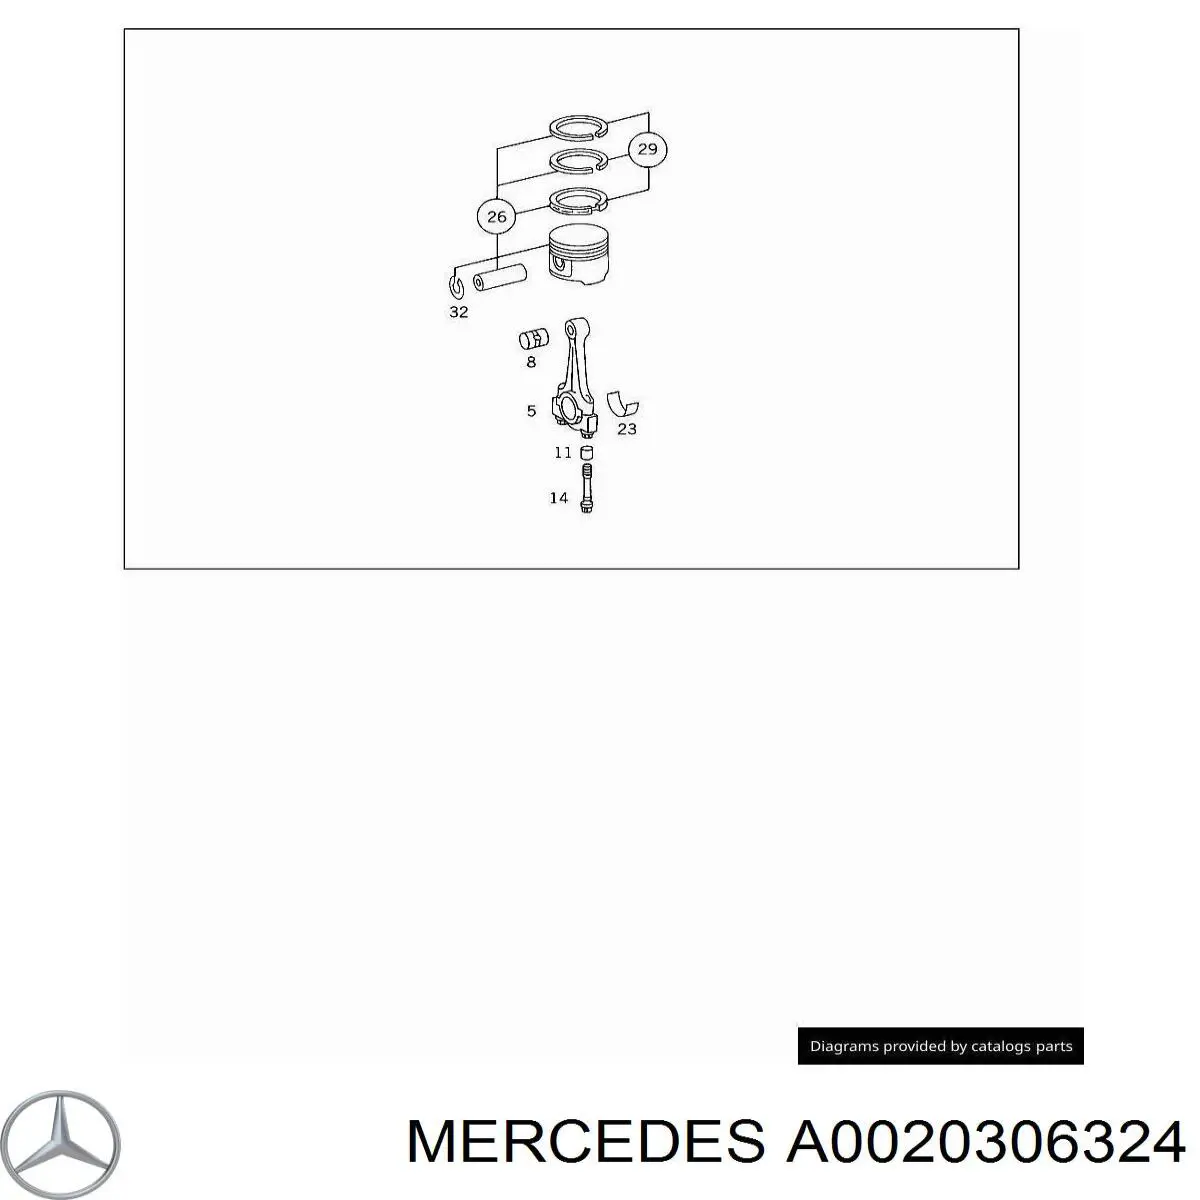 Кольца поршневые на 1 цилиндр, STD. Mercedes A0020306324